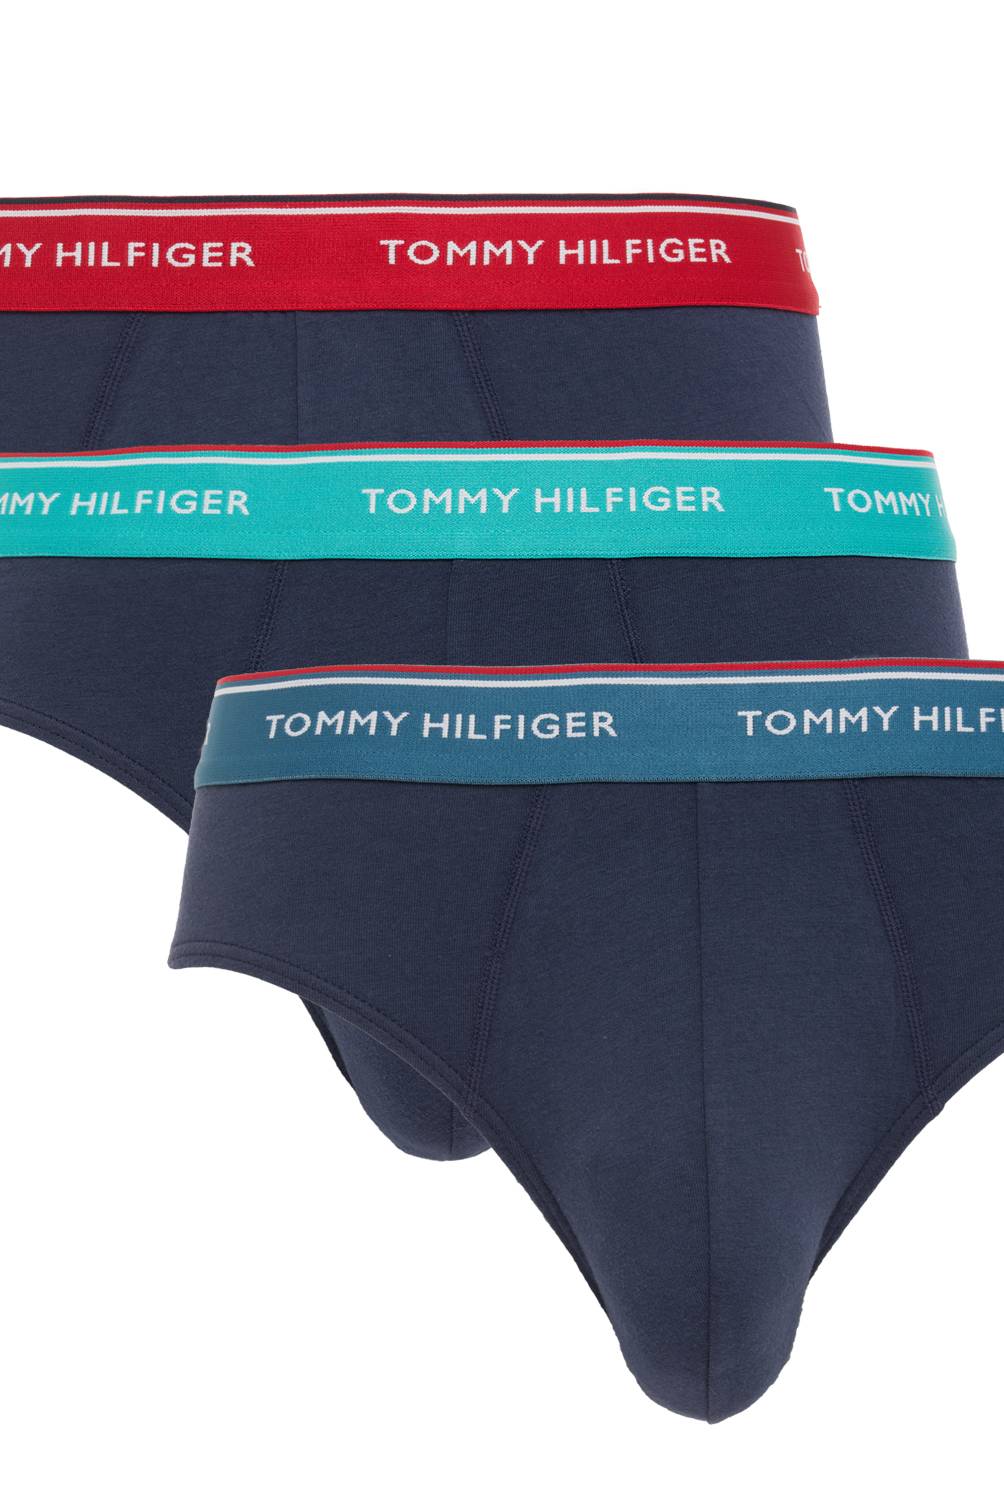 TOMMY HILFIGER - Pack de 3 Boxer Hombre